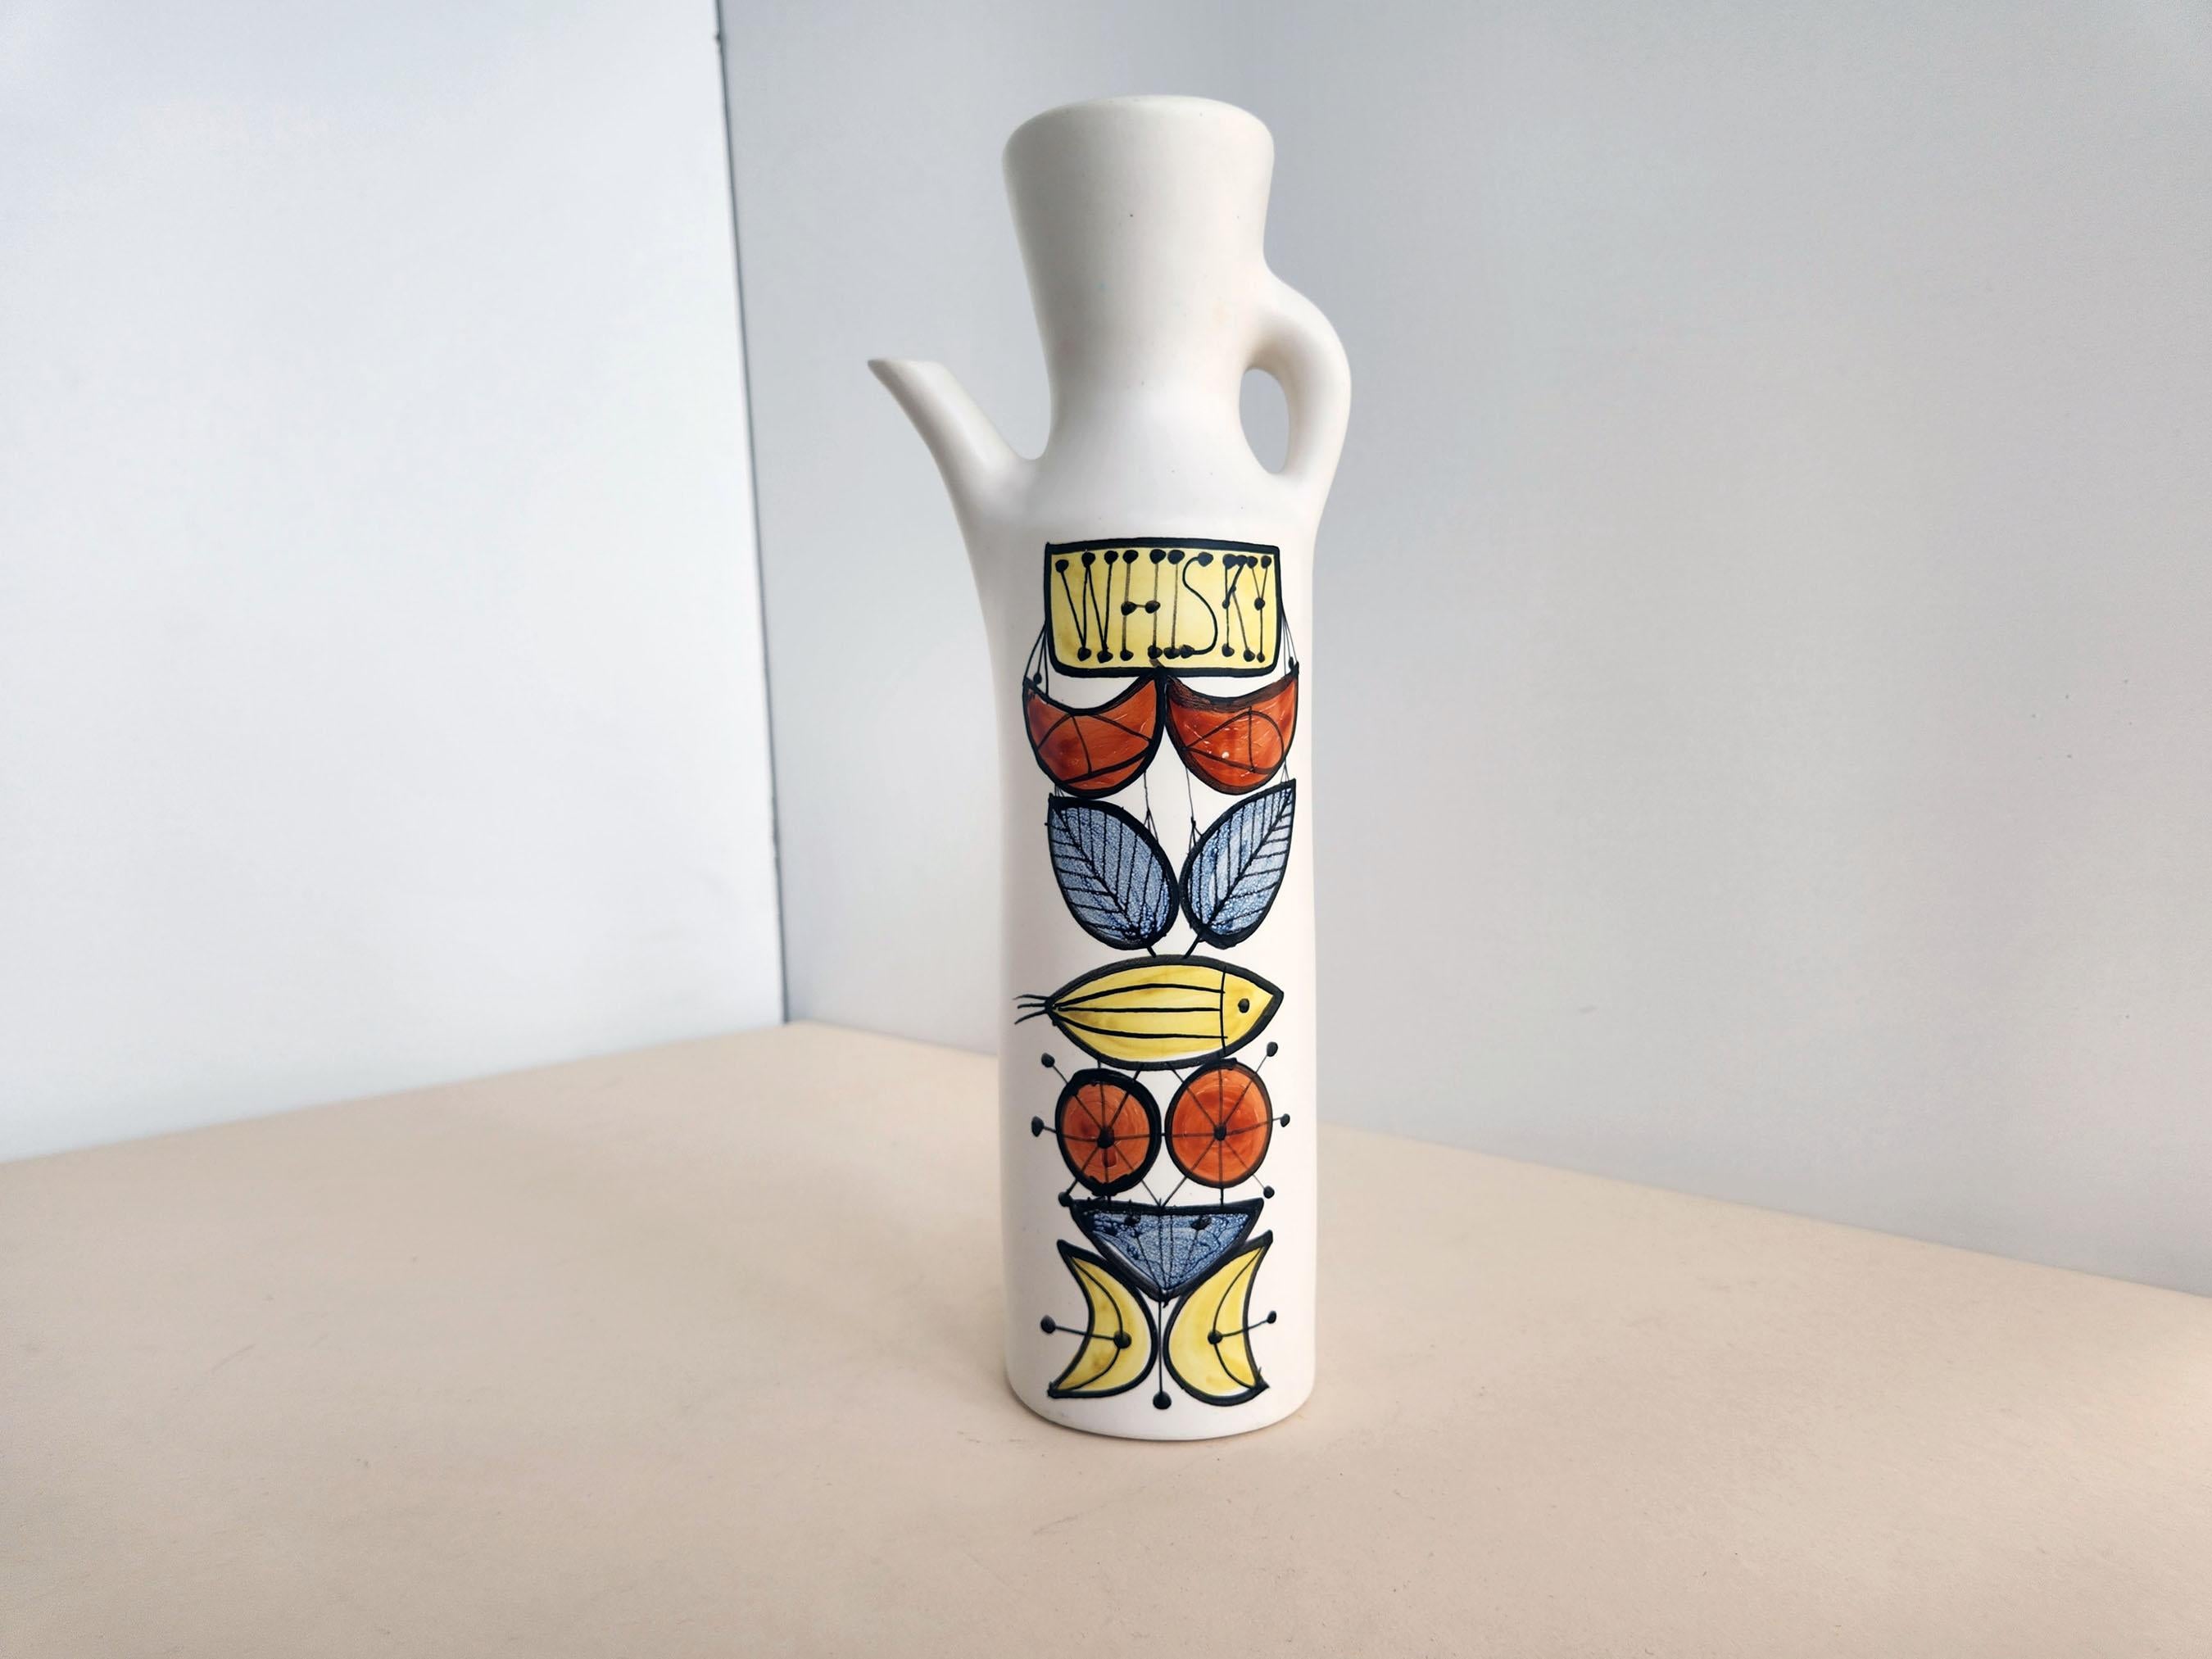 Vintage Keramik dekorative Kolben unterzeichnet von Roger Capron - Vallauris, Frankreich

Roger Capron war ein einflussreicher französischer Keramiker, der für seine Kacheltische und die Verwendung wiederkehrender Motive wie stilisierte Zweige und